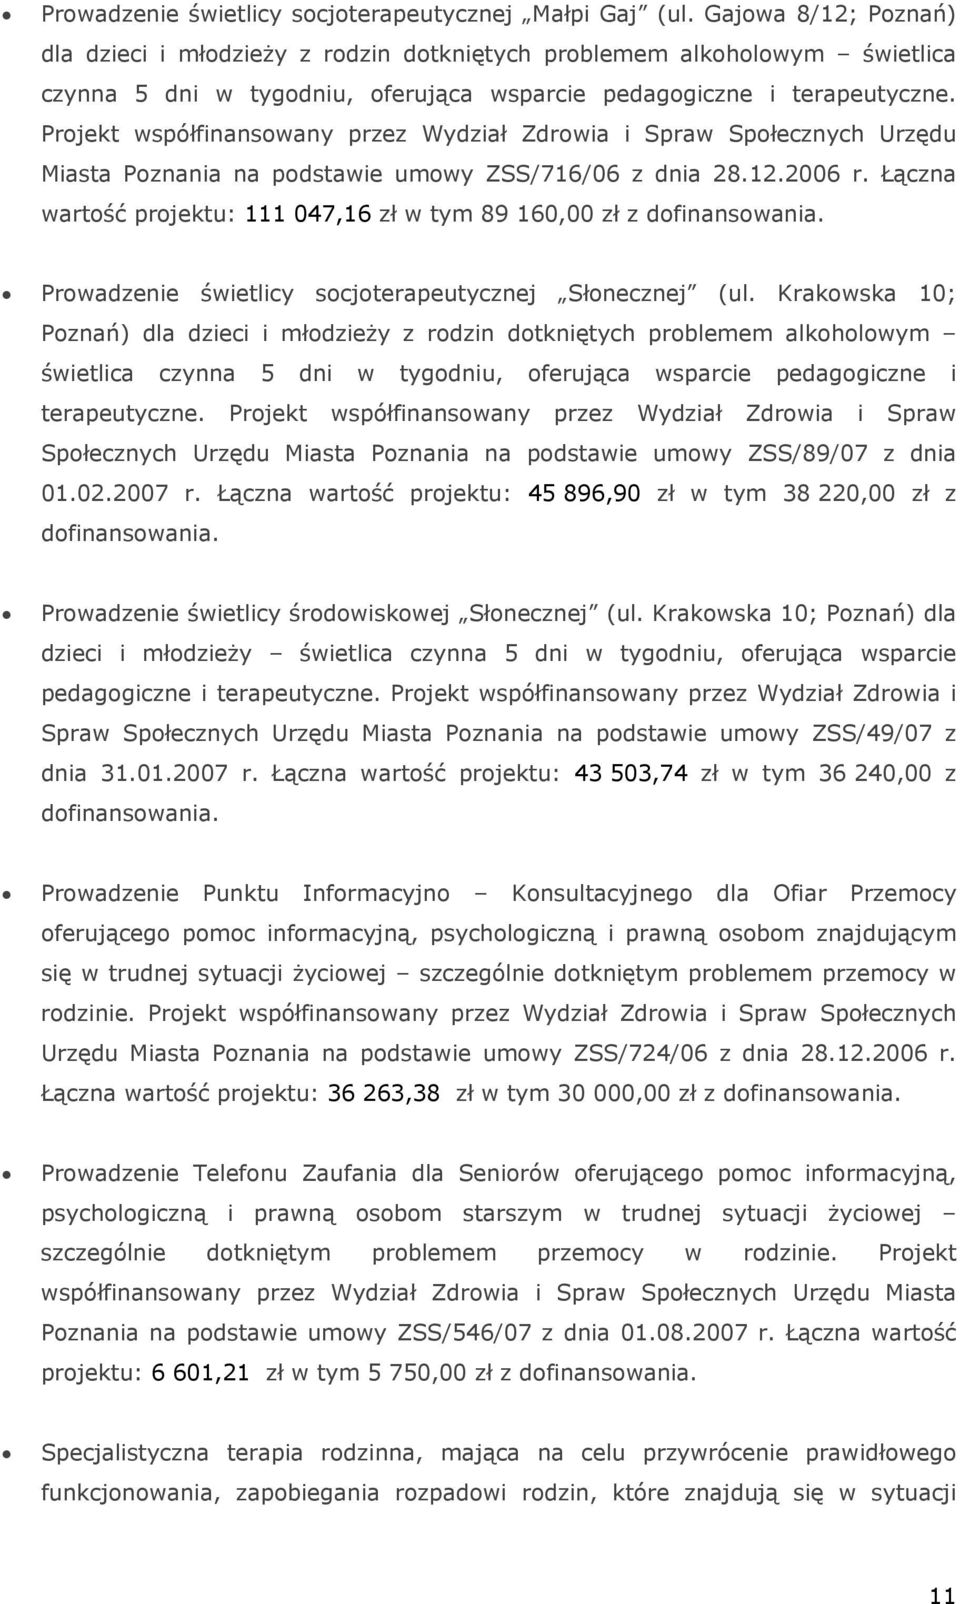 Projekt współfinansowany przez Wydział Zdrowia i Spraw Społecznych Urzędu Miasta Poznania na podstawie umowy ZSS/716/06 z dnia 28.12.2006 r.